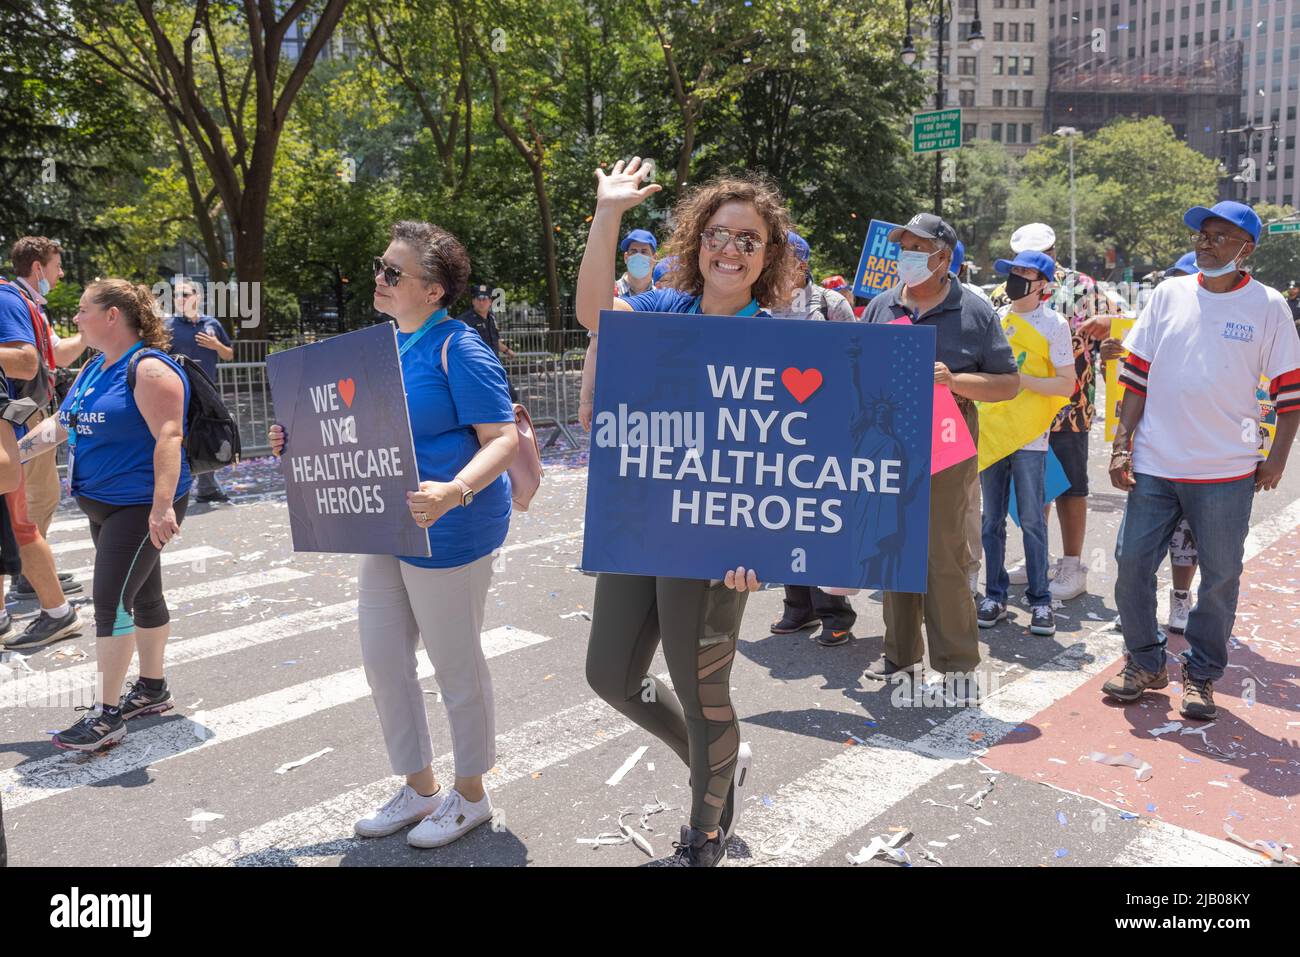 NEW YORK, N.Y. – 7. Juli 2021: Während der Heroes Ticker-Tape-Parade in New York City, die wichtige Arbeiter ehrt, werden Demonstranten gesehen. Stockfoto